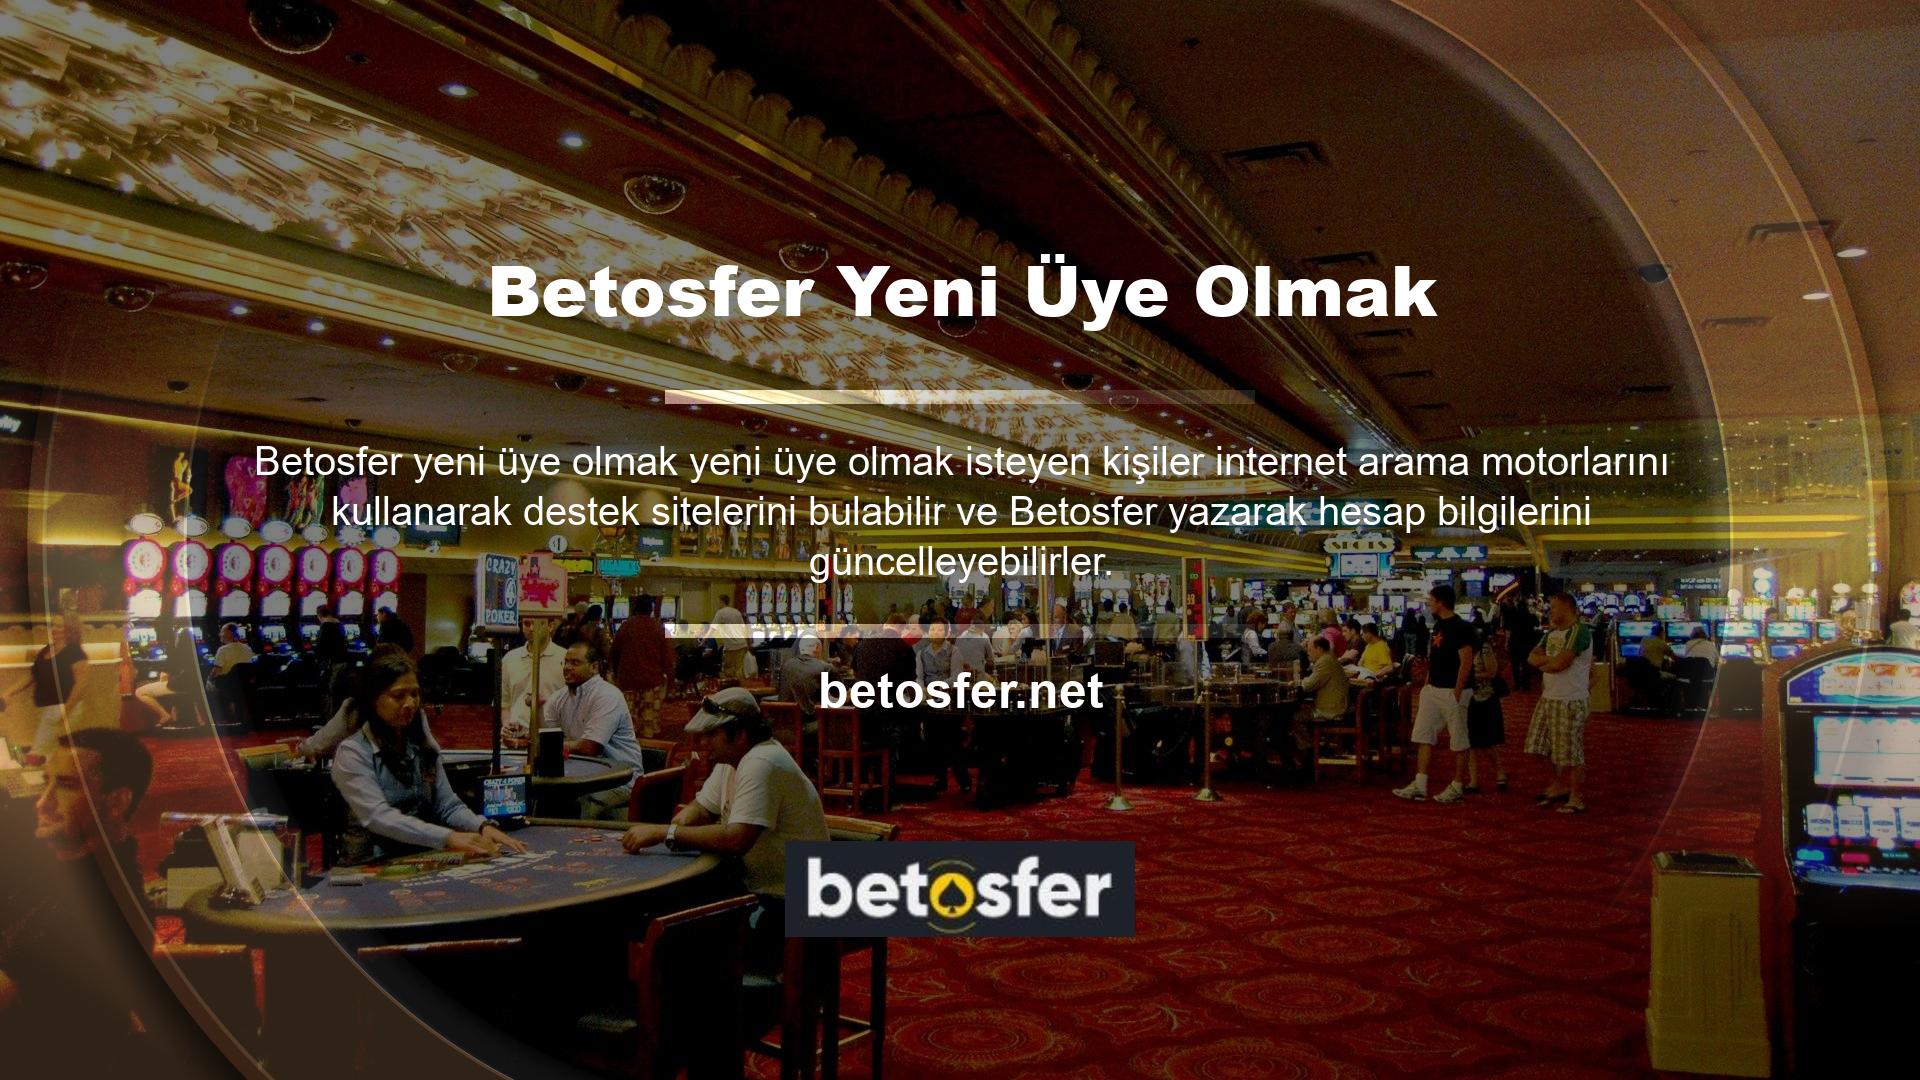 Betosfer mobil casino sitesi, başlattığı çevrimiçi oyun hizmetlerini geliştirerek ilerlemeye devam ediyor